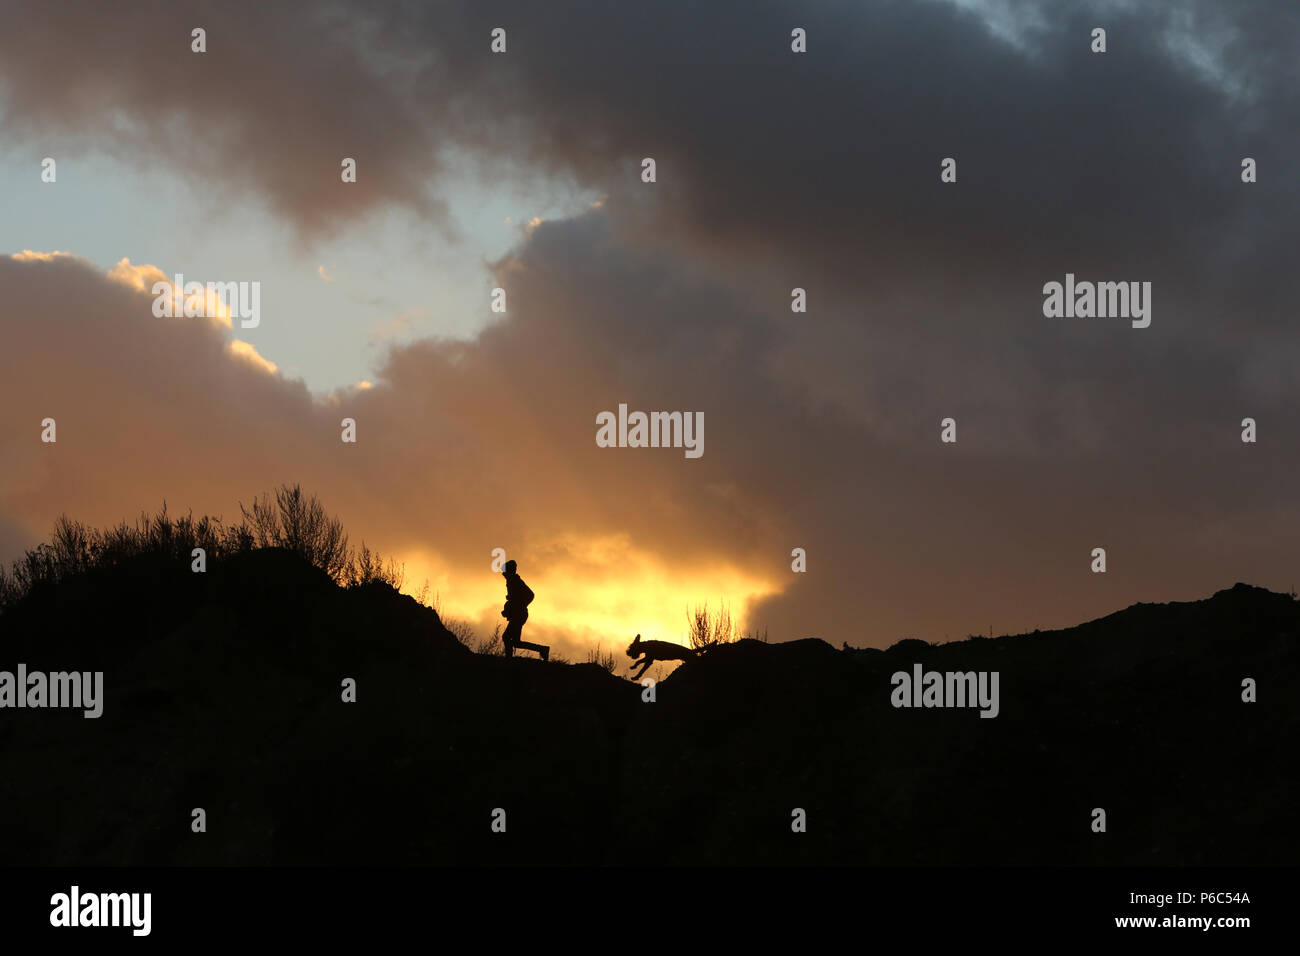 Wustrow, Allemagne - silhouette, le garçon s'exécute au coucher du soleil avec son chien sur une dune Banque D'Images